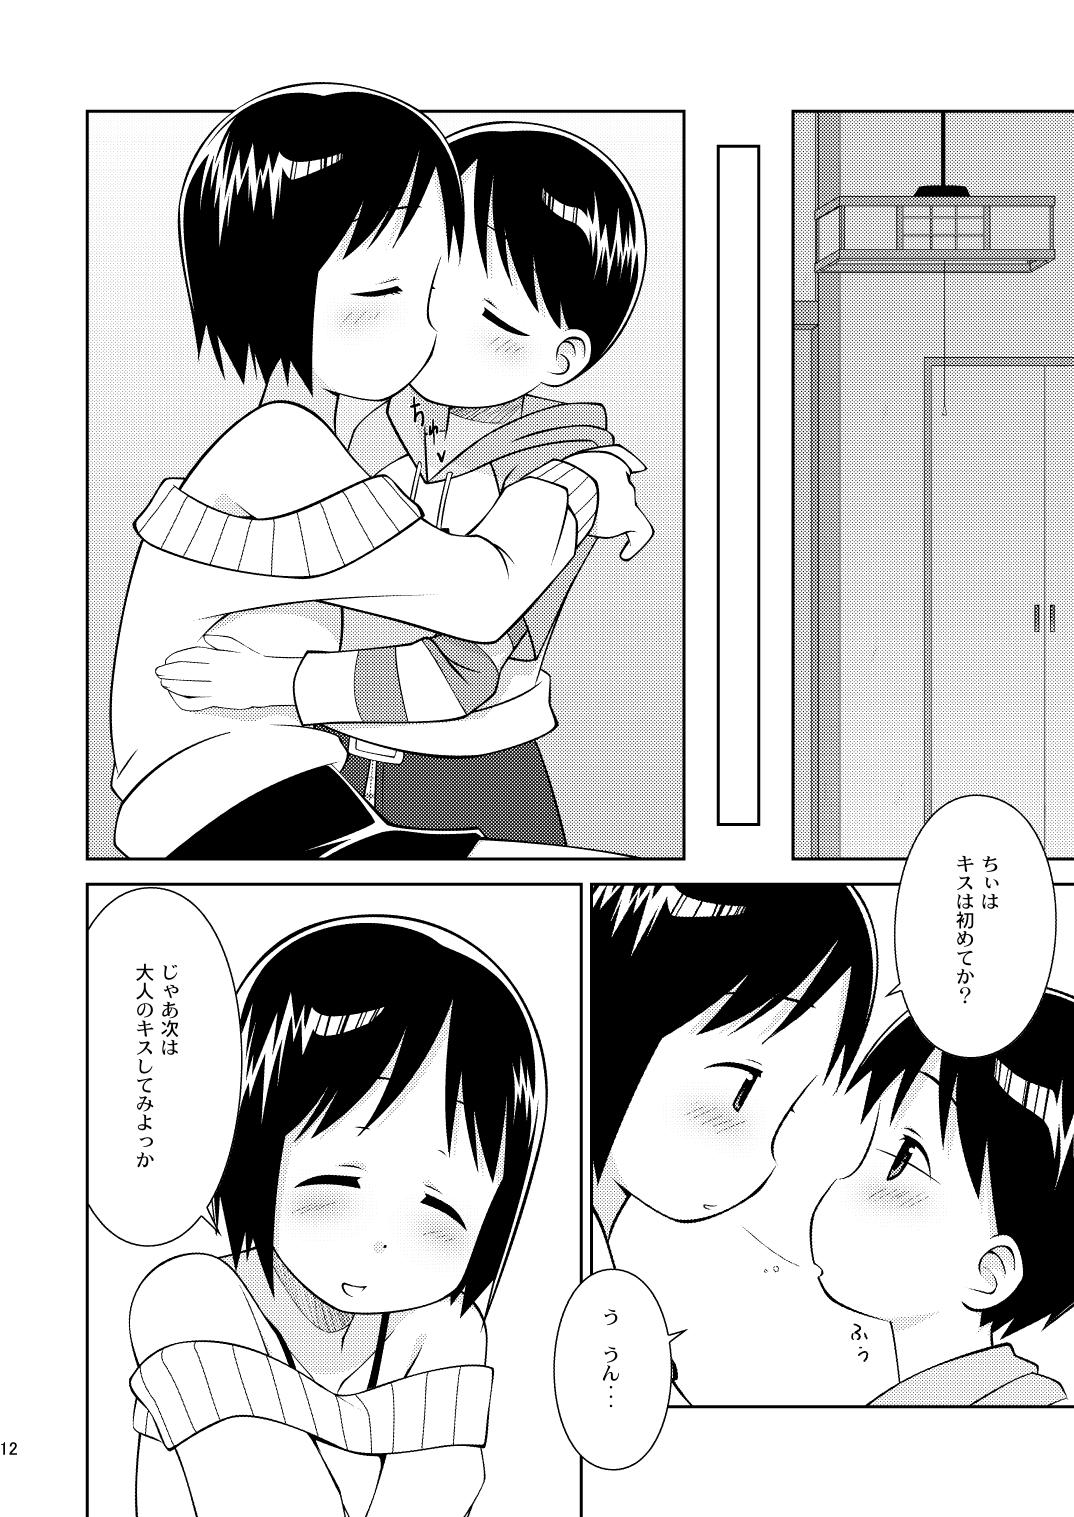 Boy Fuck Girl Mashimaro Works - Ichigo mashimaro Pounding - Page 12